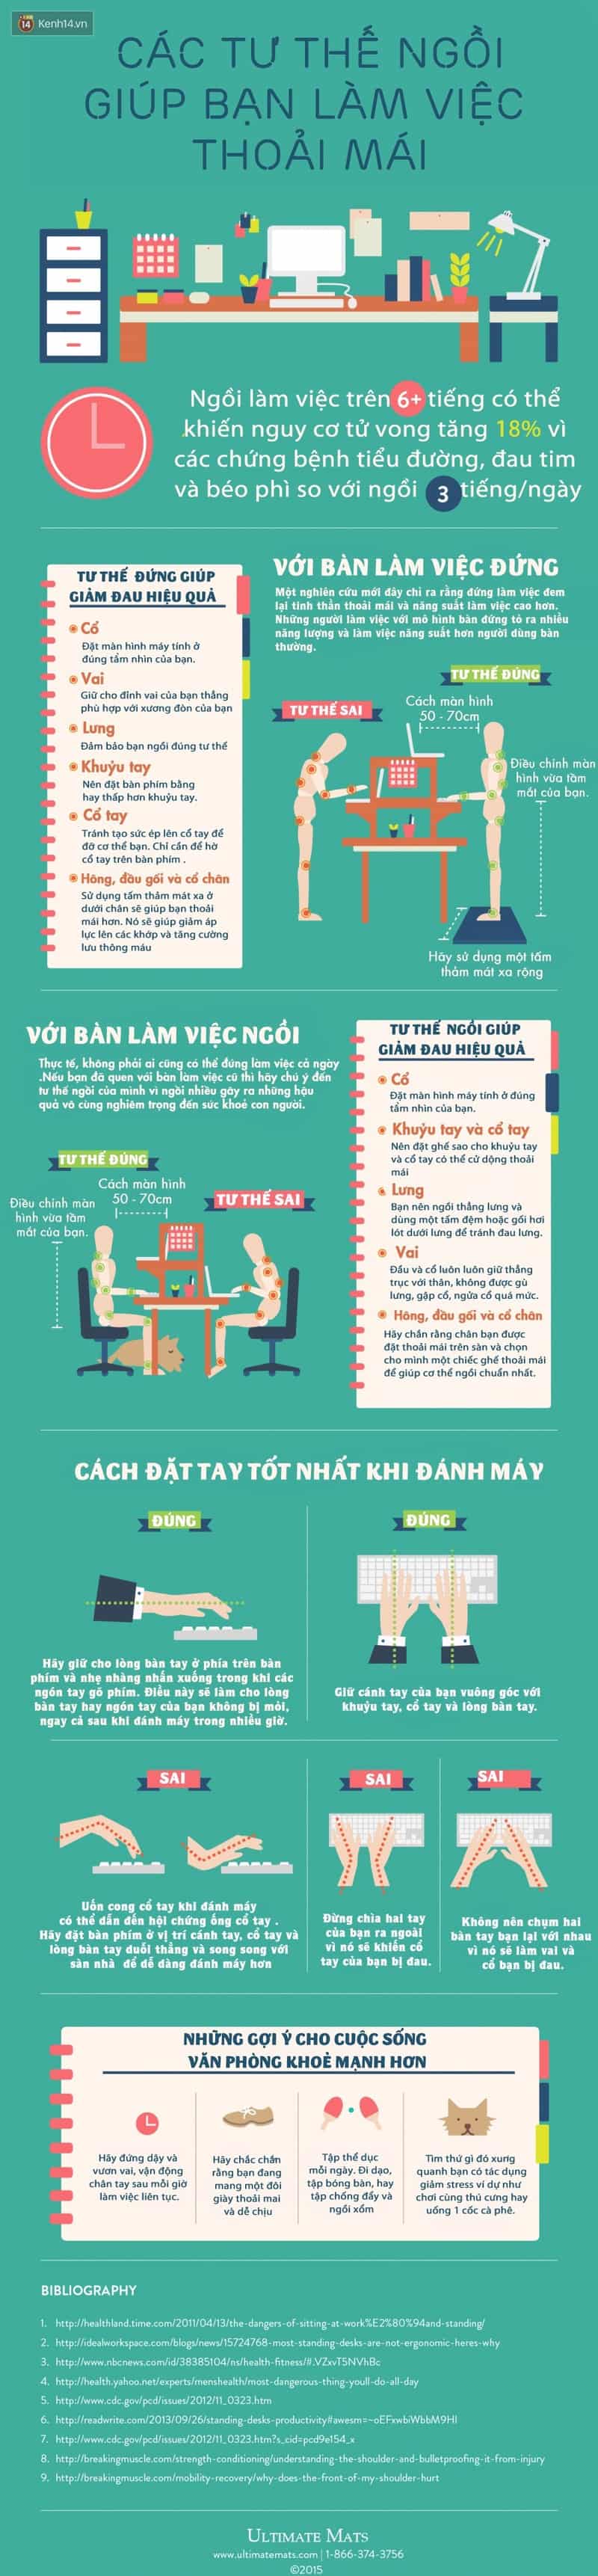 Infographic_Tu_The_Lam_Viec_Hieu_Qua